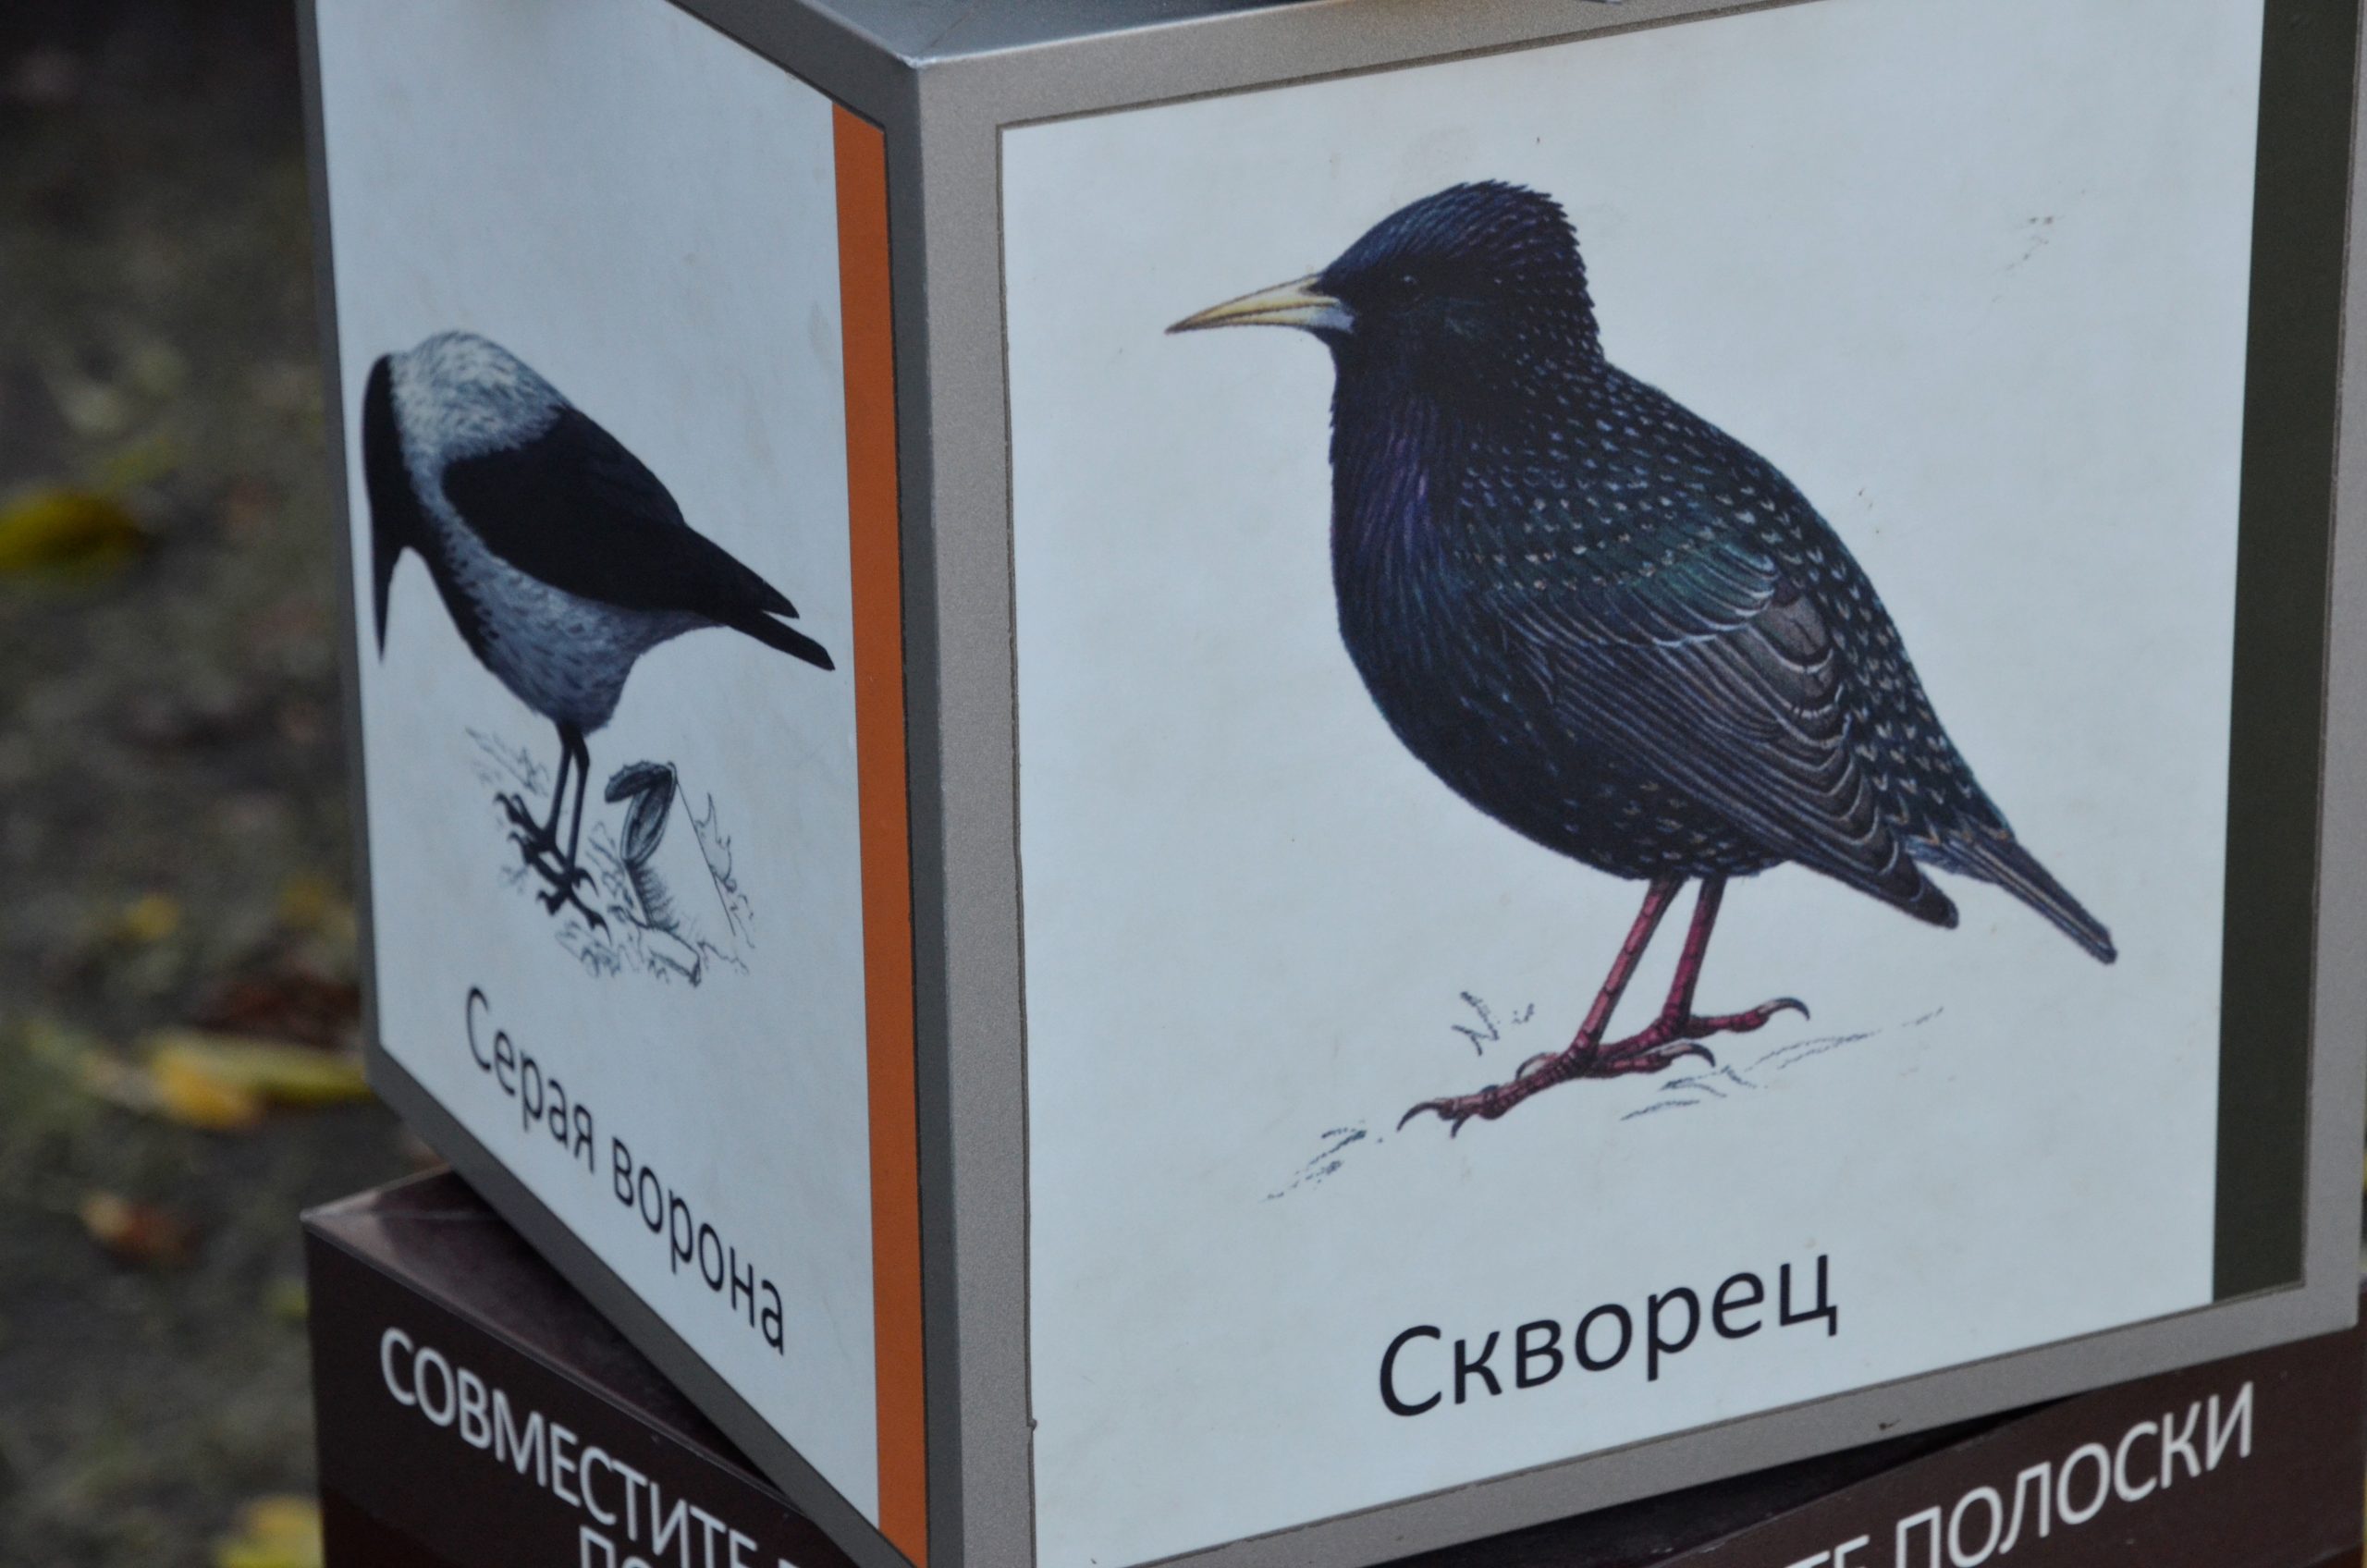 Зима не за горами: столичным жителям рассказали какие виды птиц останутся в холодное время года в Москве. Фото: Анна Быкова, «Вечерняя Москва»